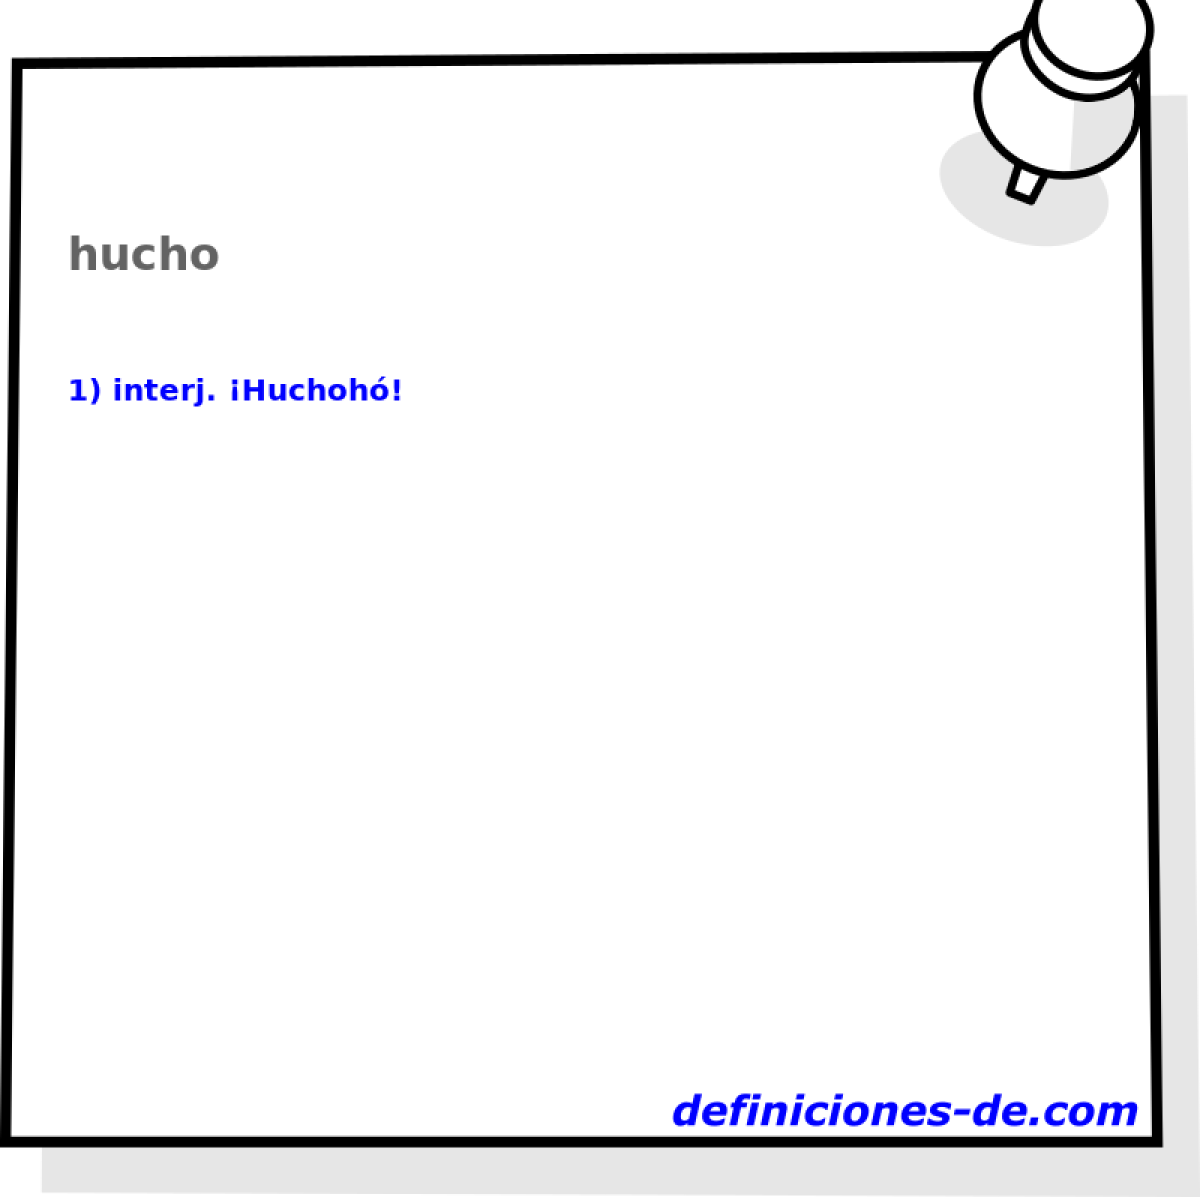 hucho 